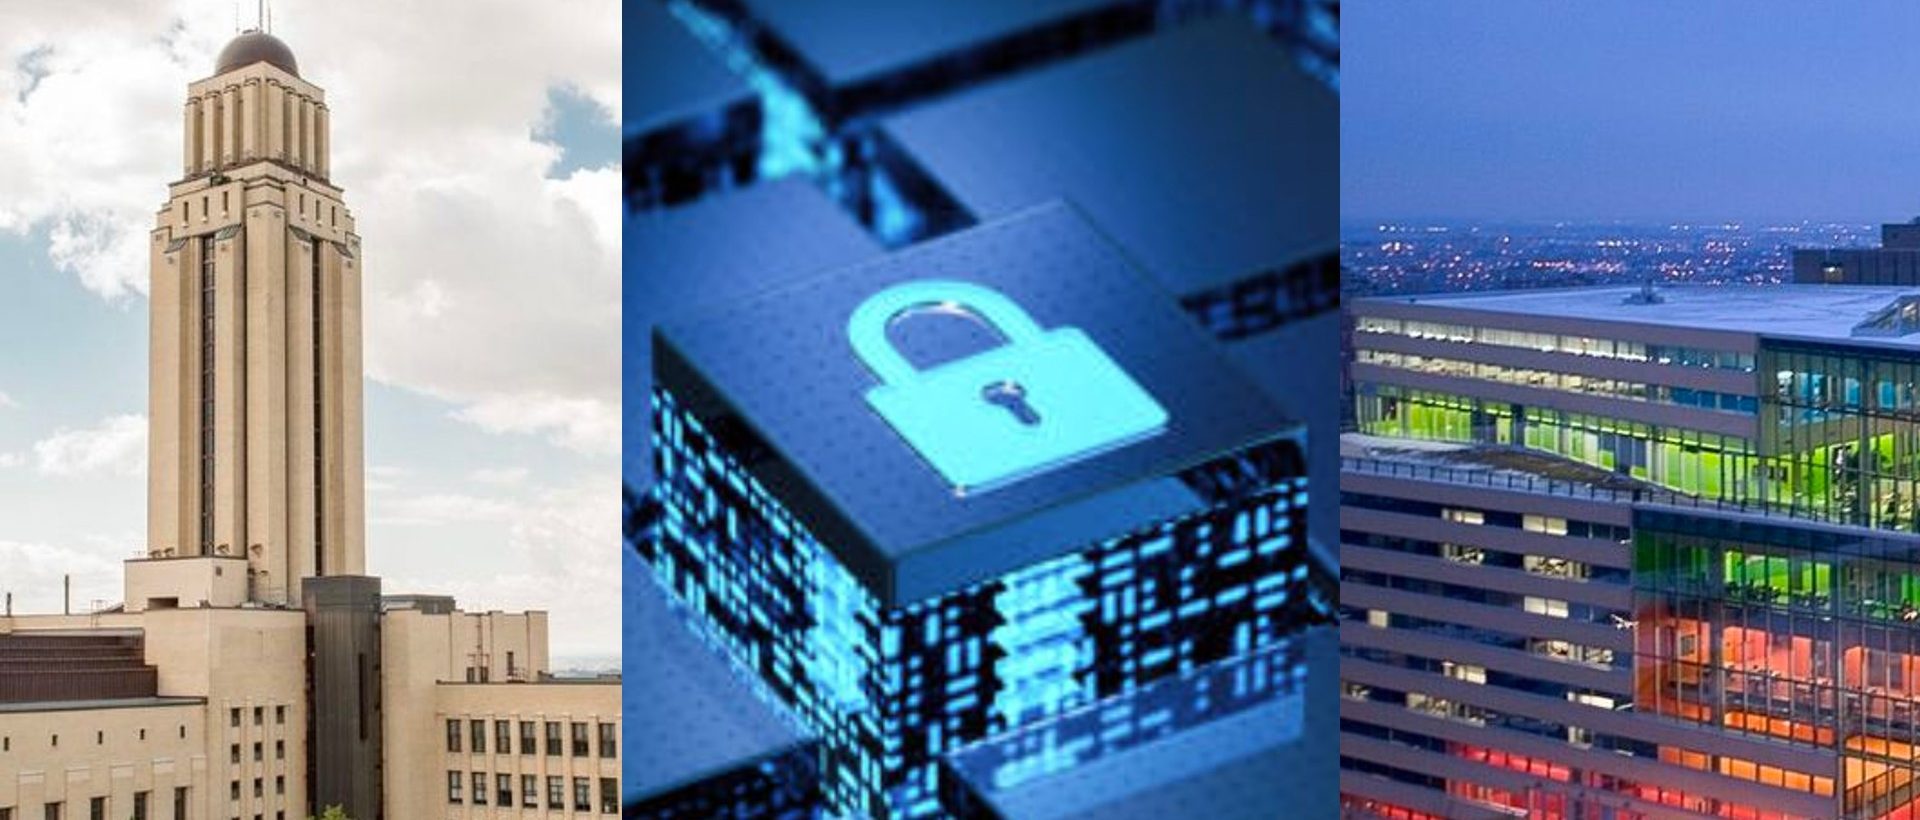 Cybersécurité : un nouvel Institut multidisciplinaire qui « aura un rôle d’influence »